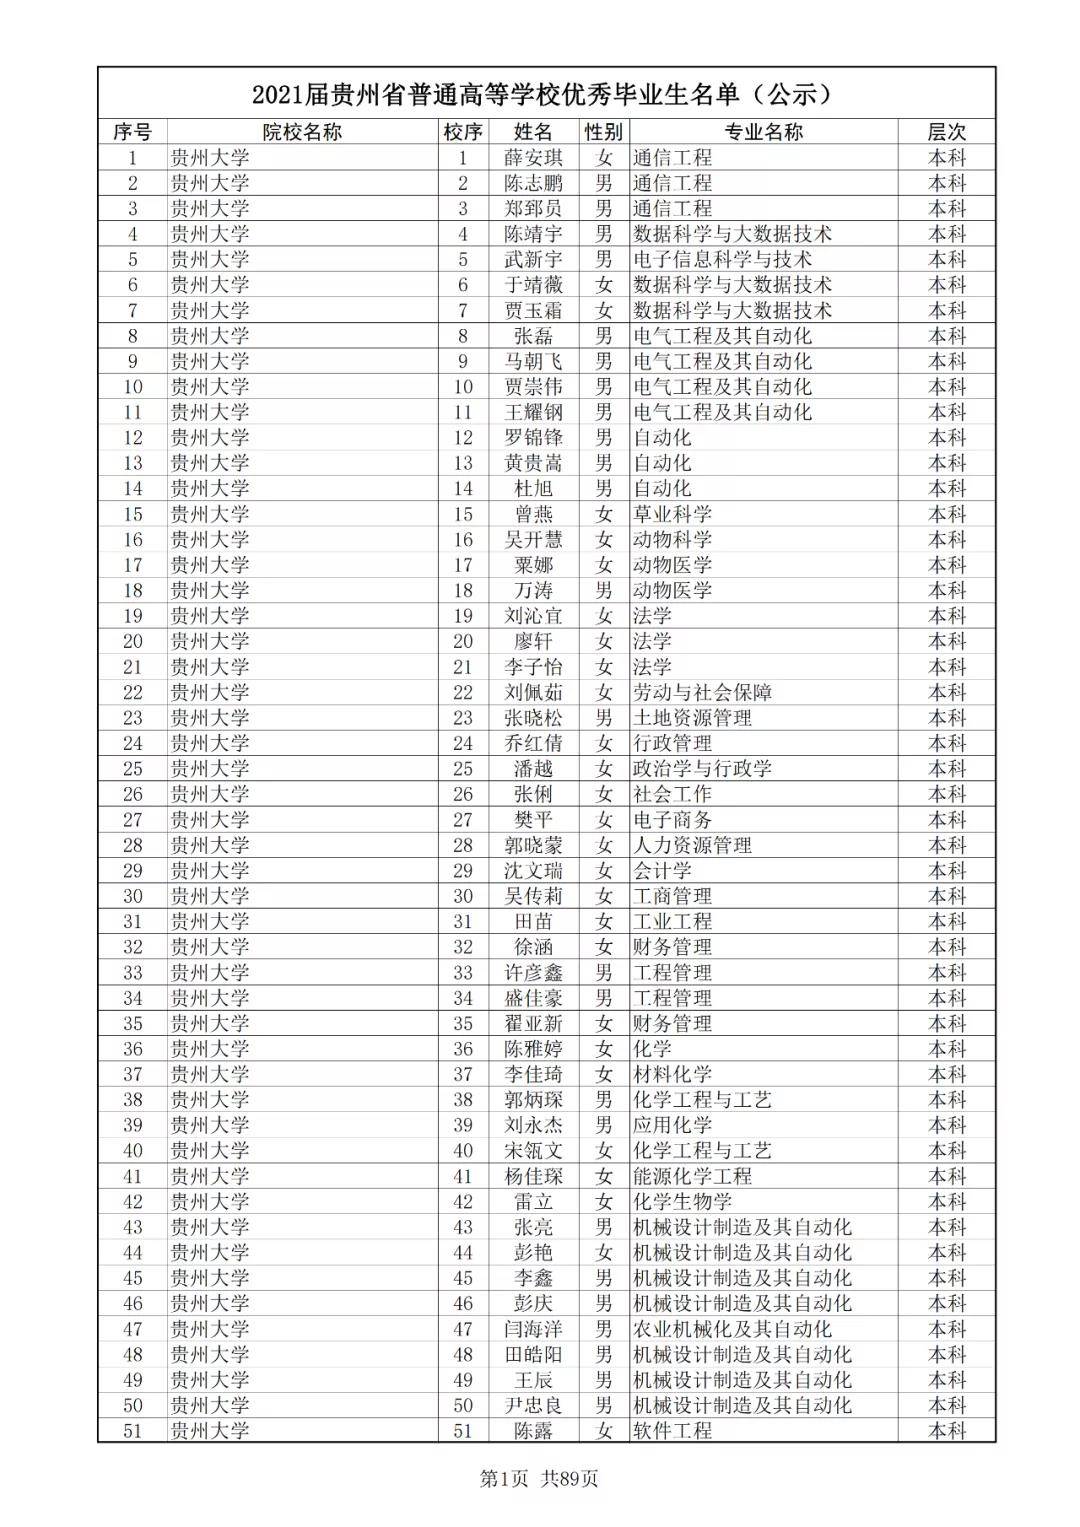 4501人! 2021届贵州省高校优秀毕业生公示名单一览